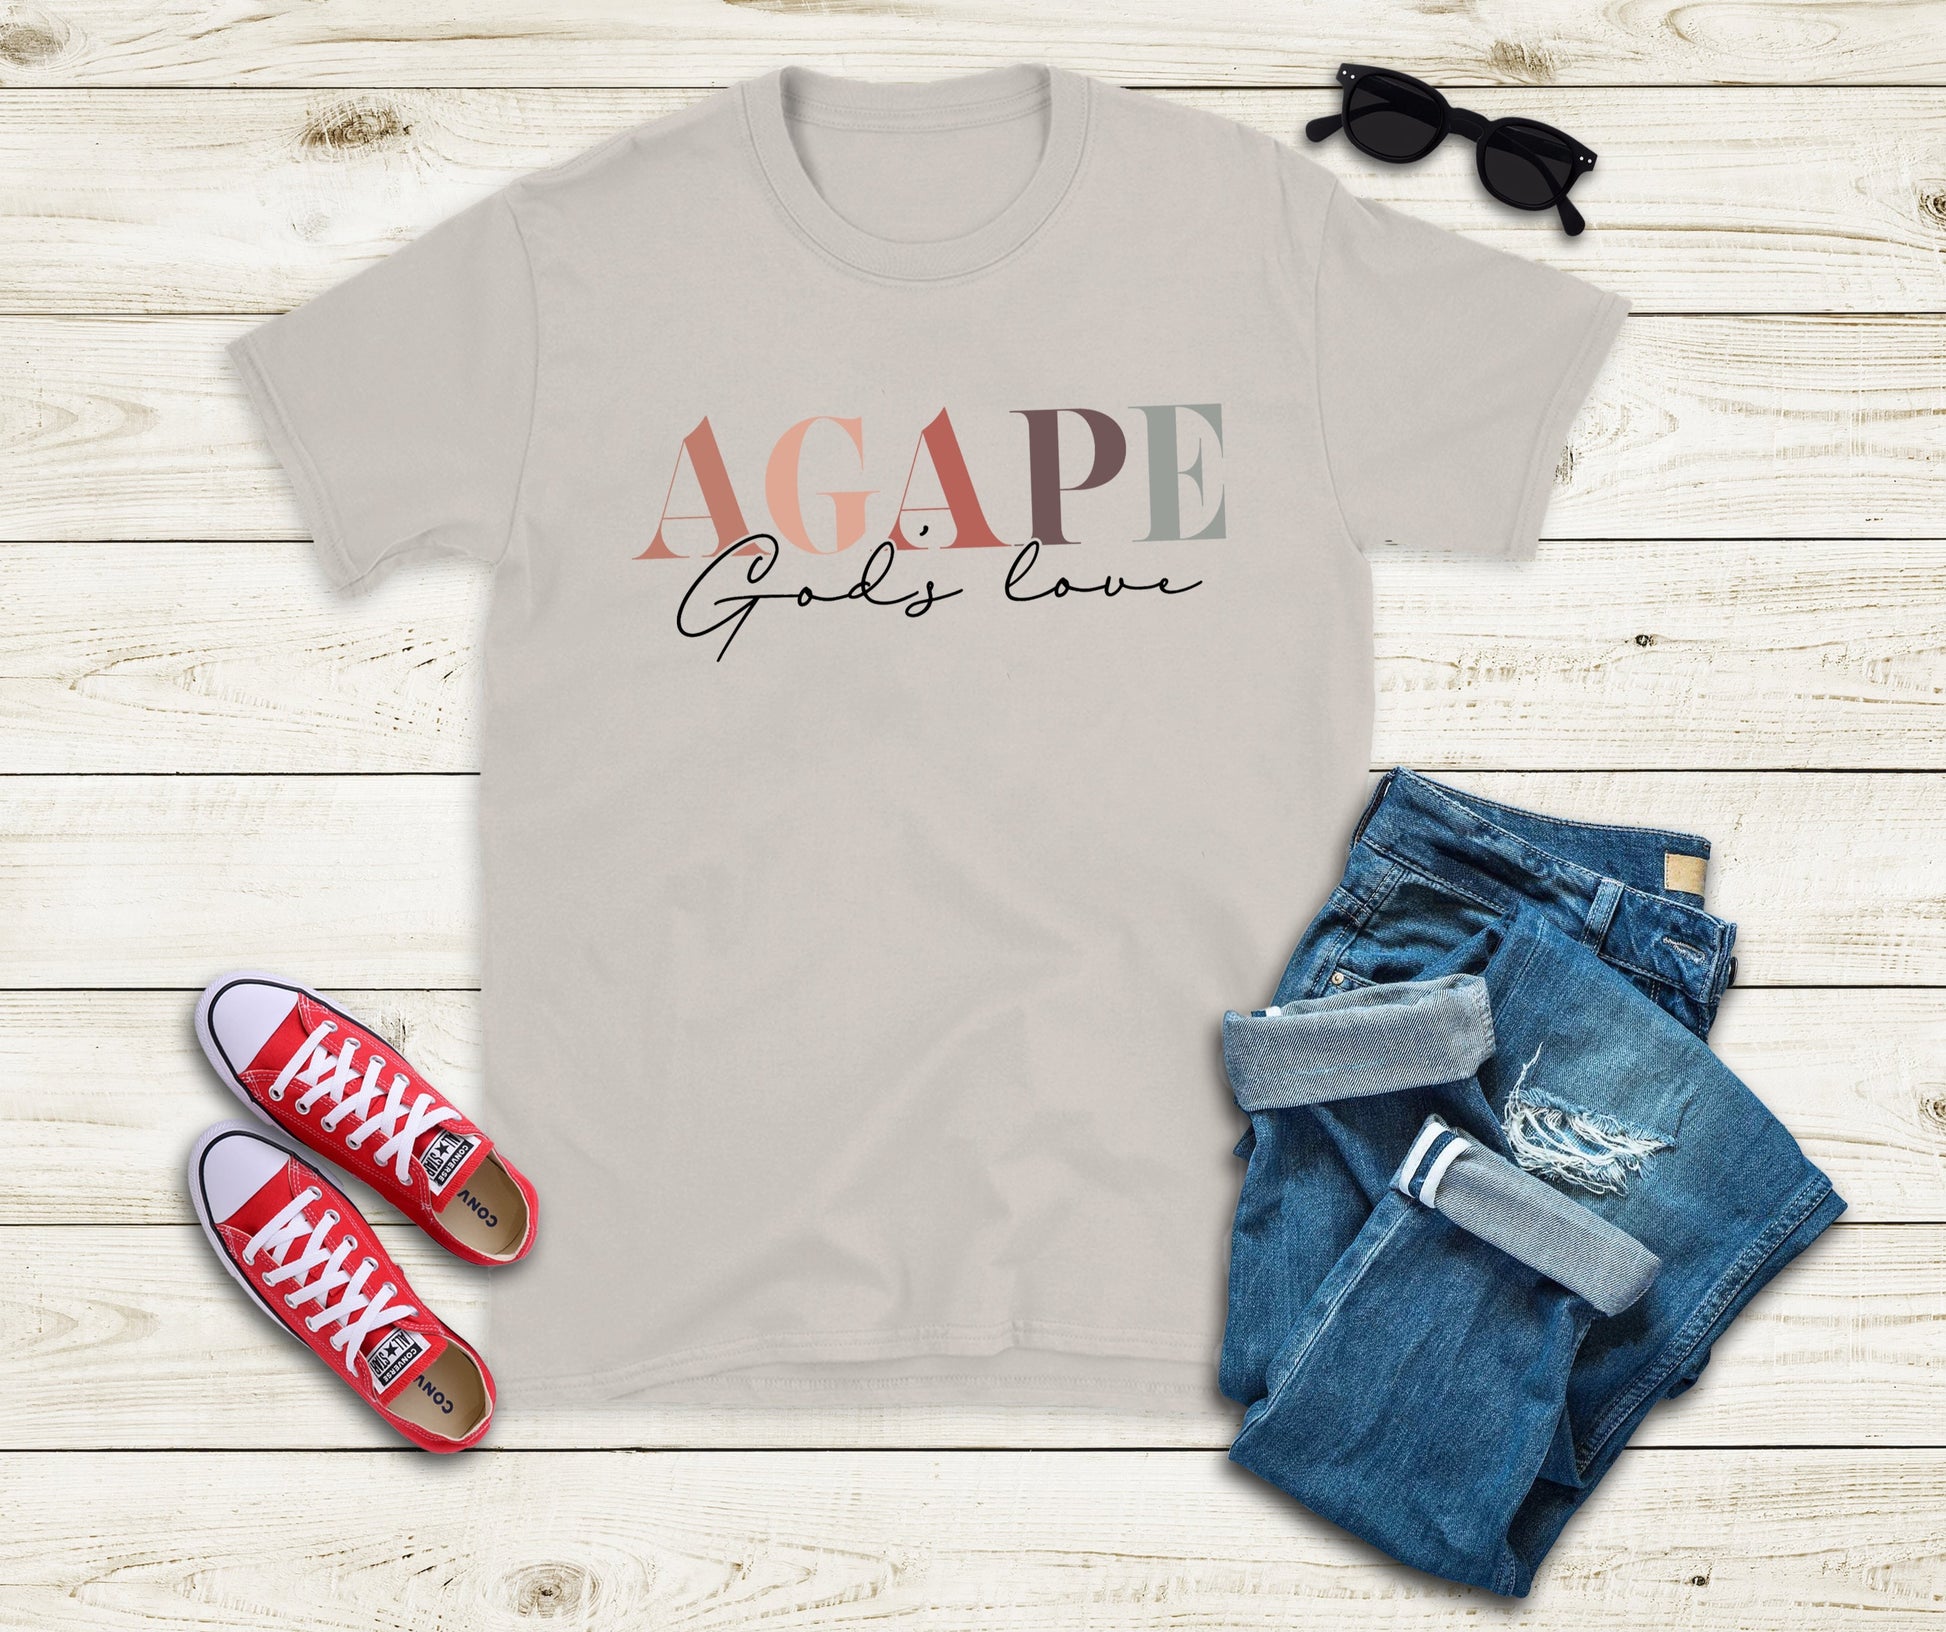 Agape God's Love shirt